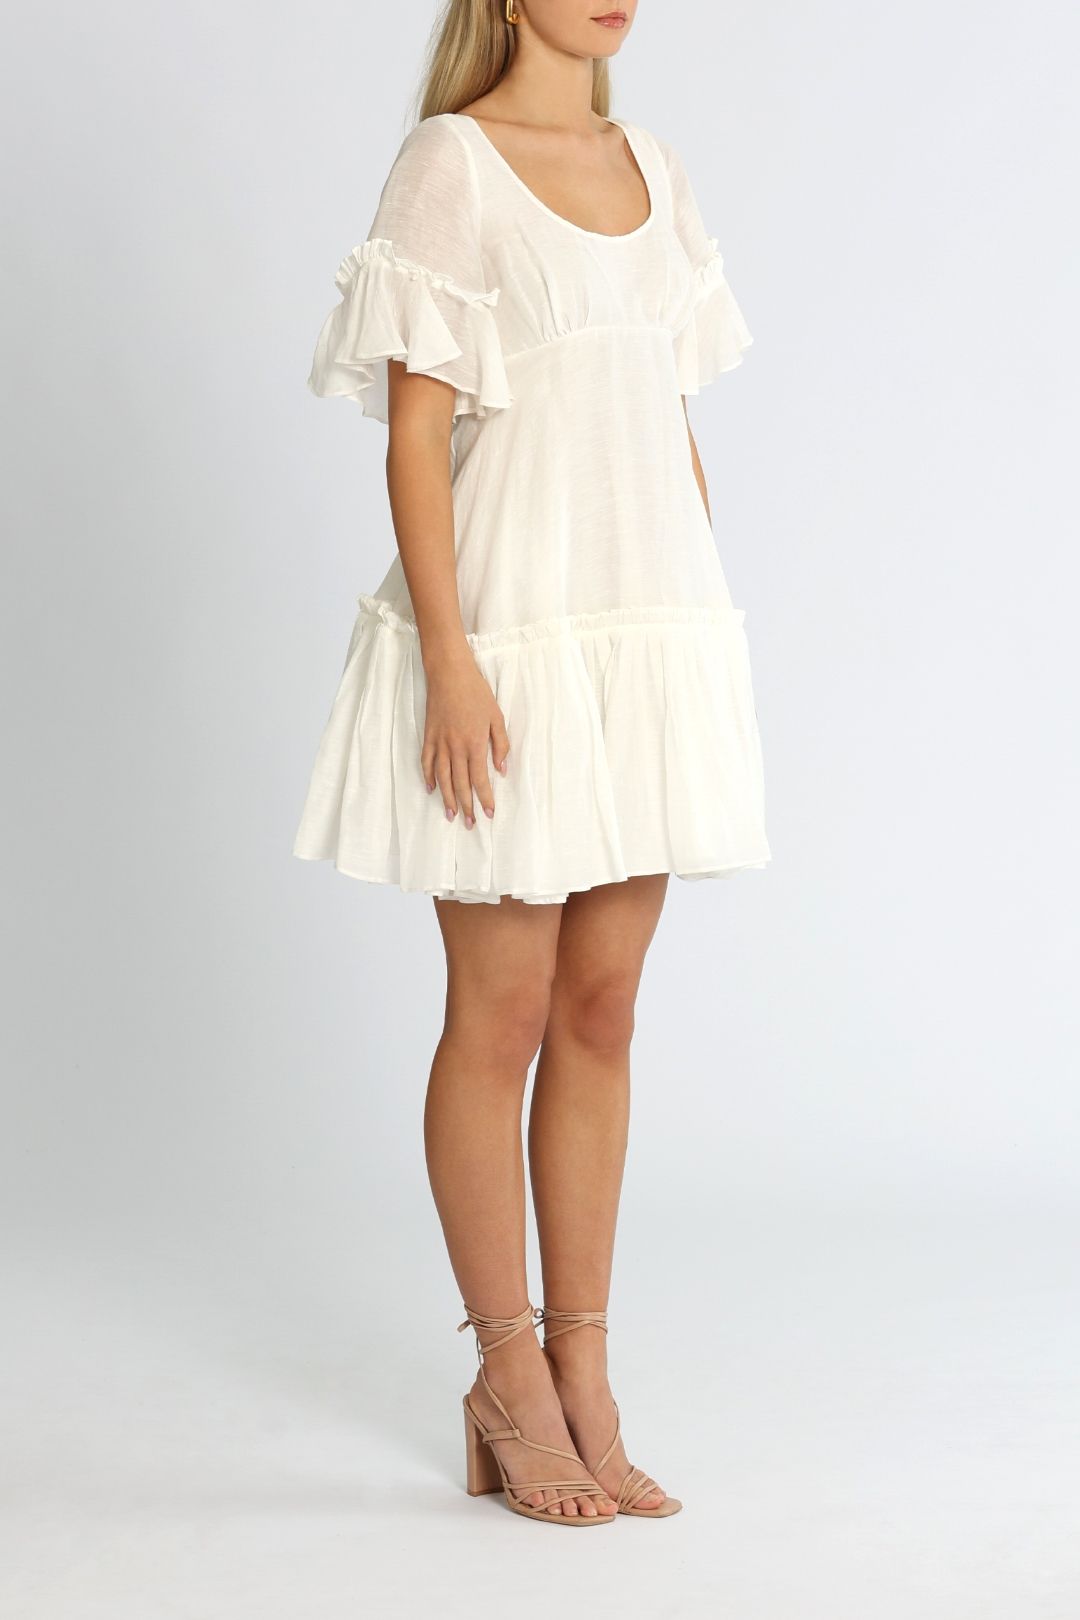 Leo Lin Luminous Mini Dress White Mini